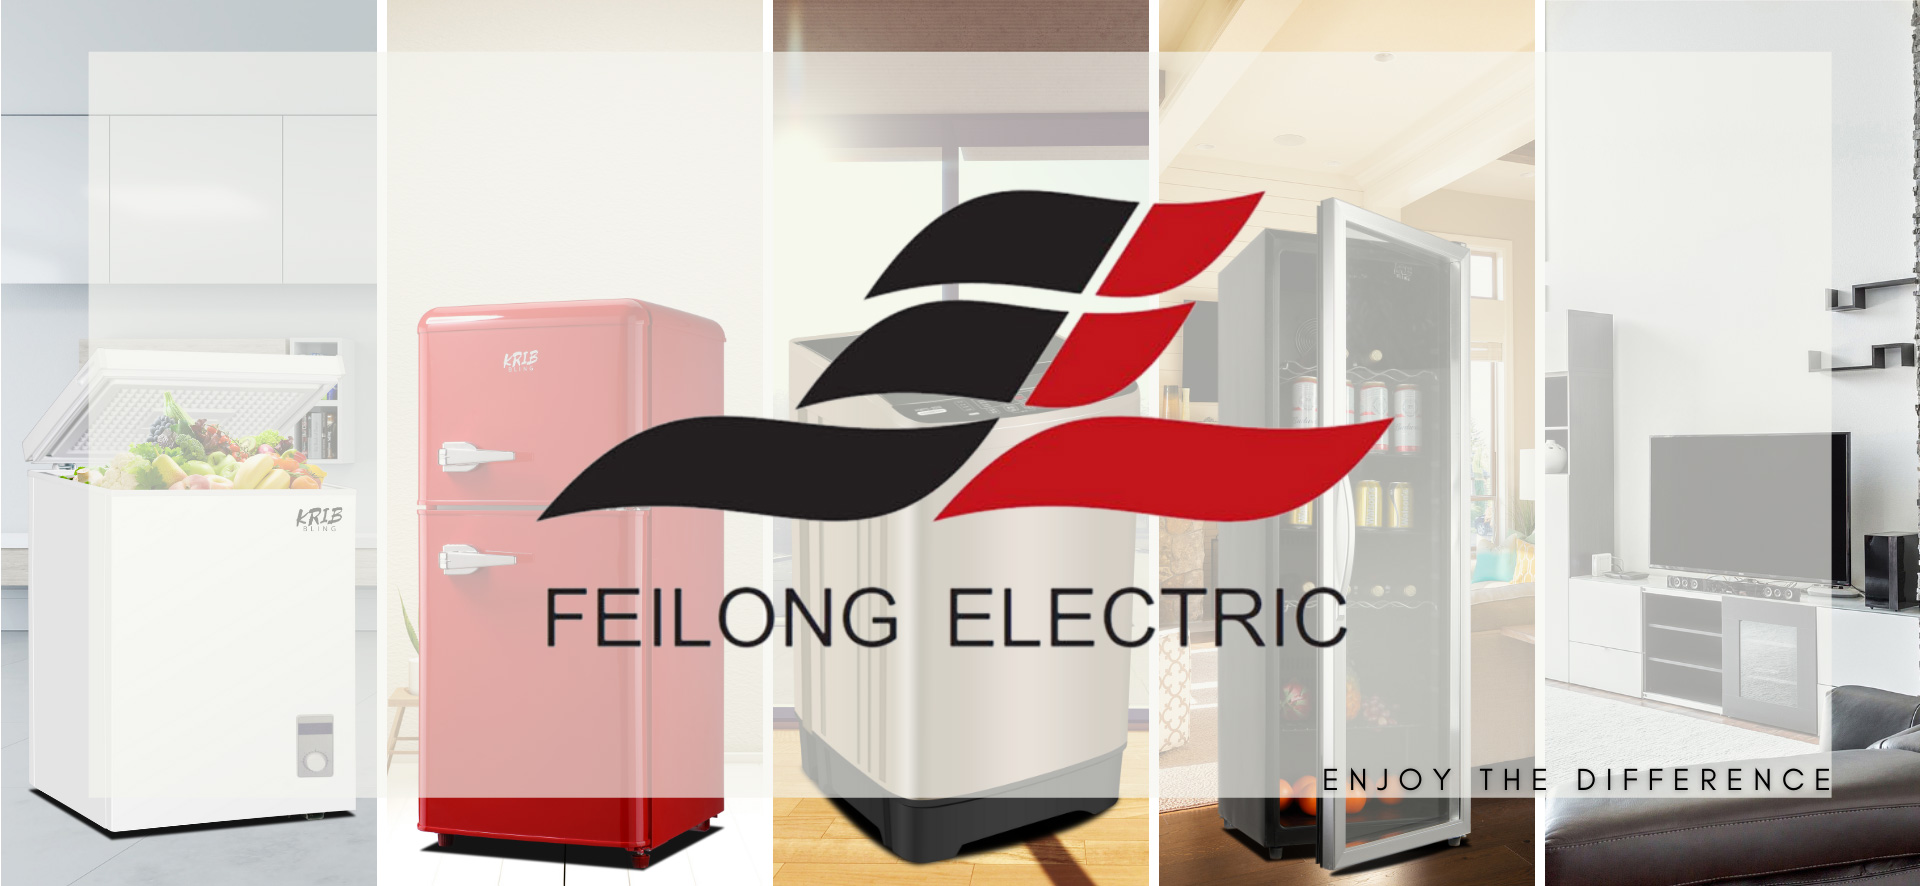 Feilong Electric